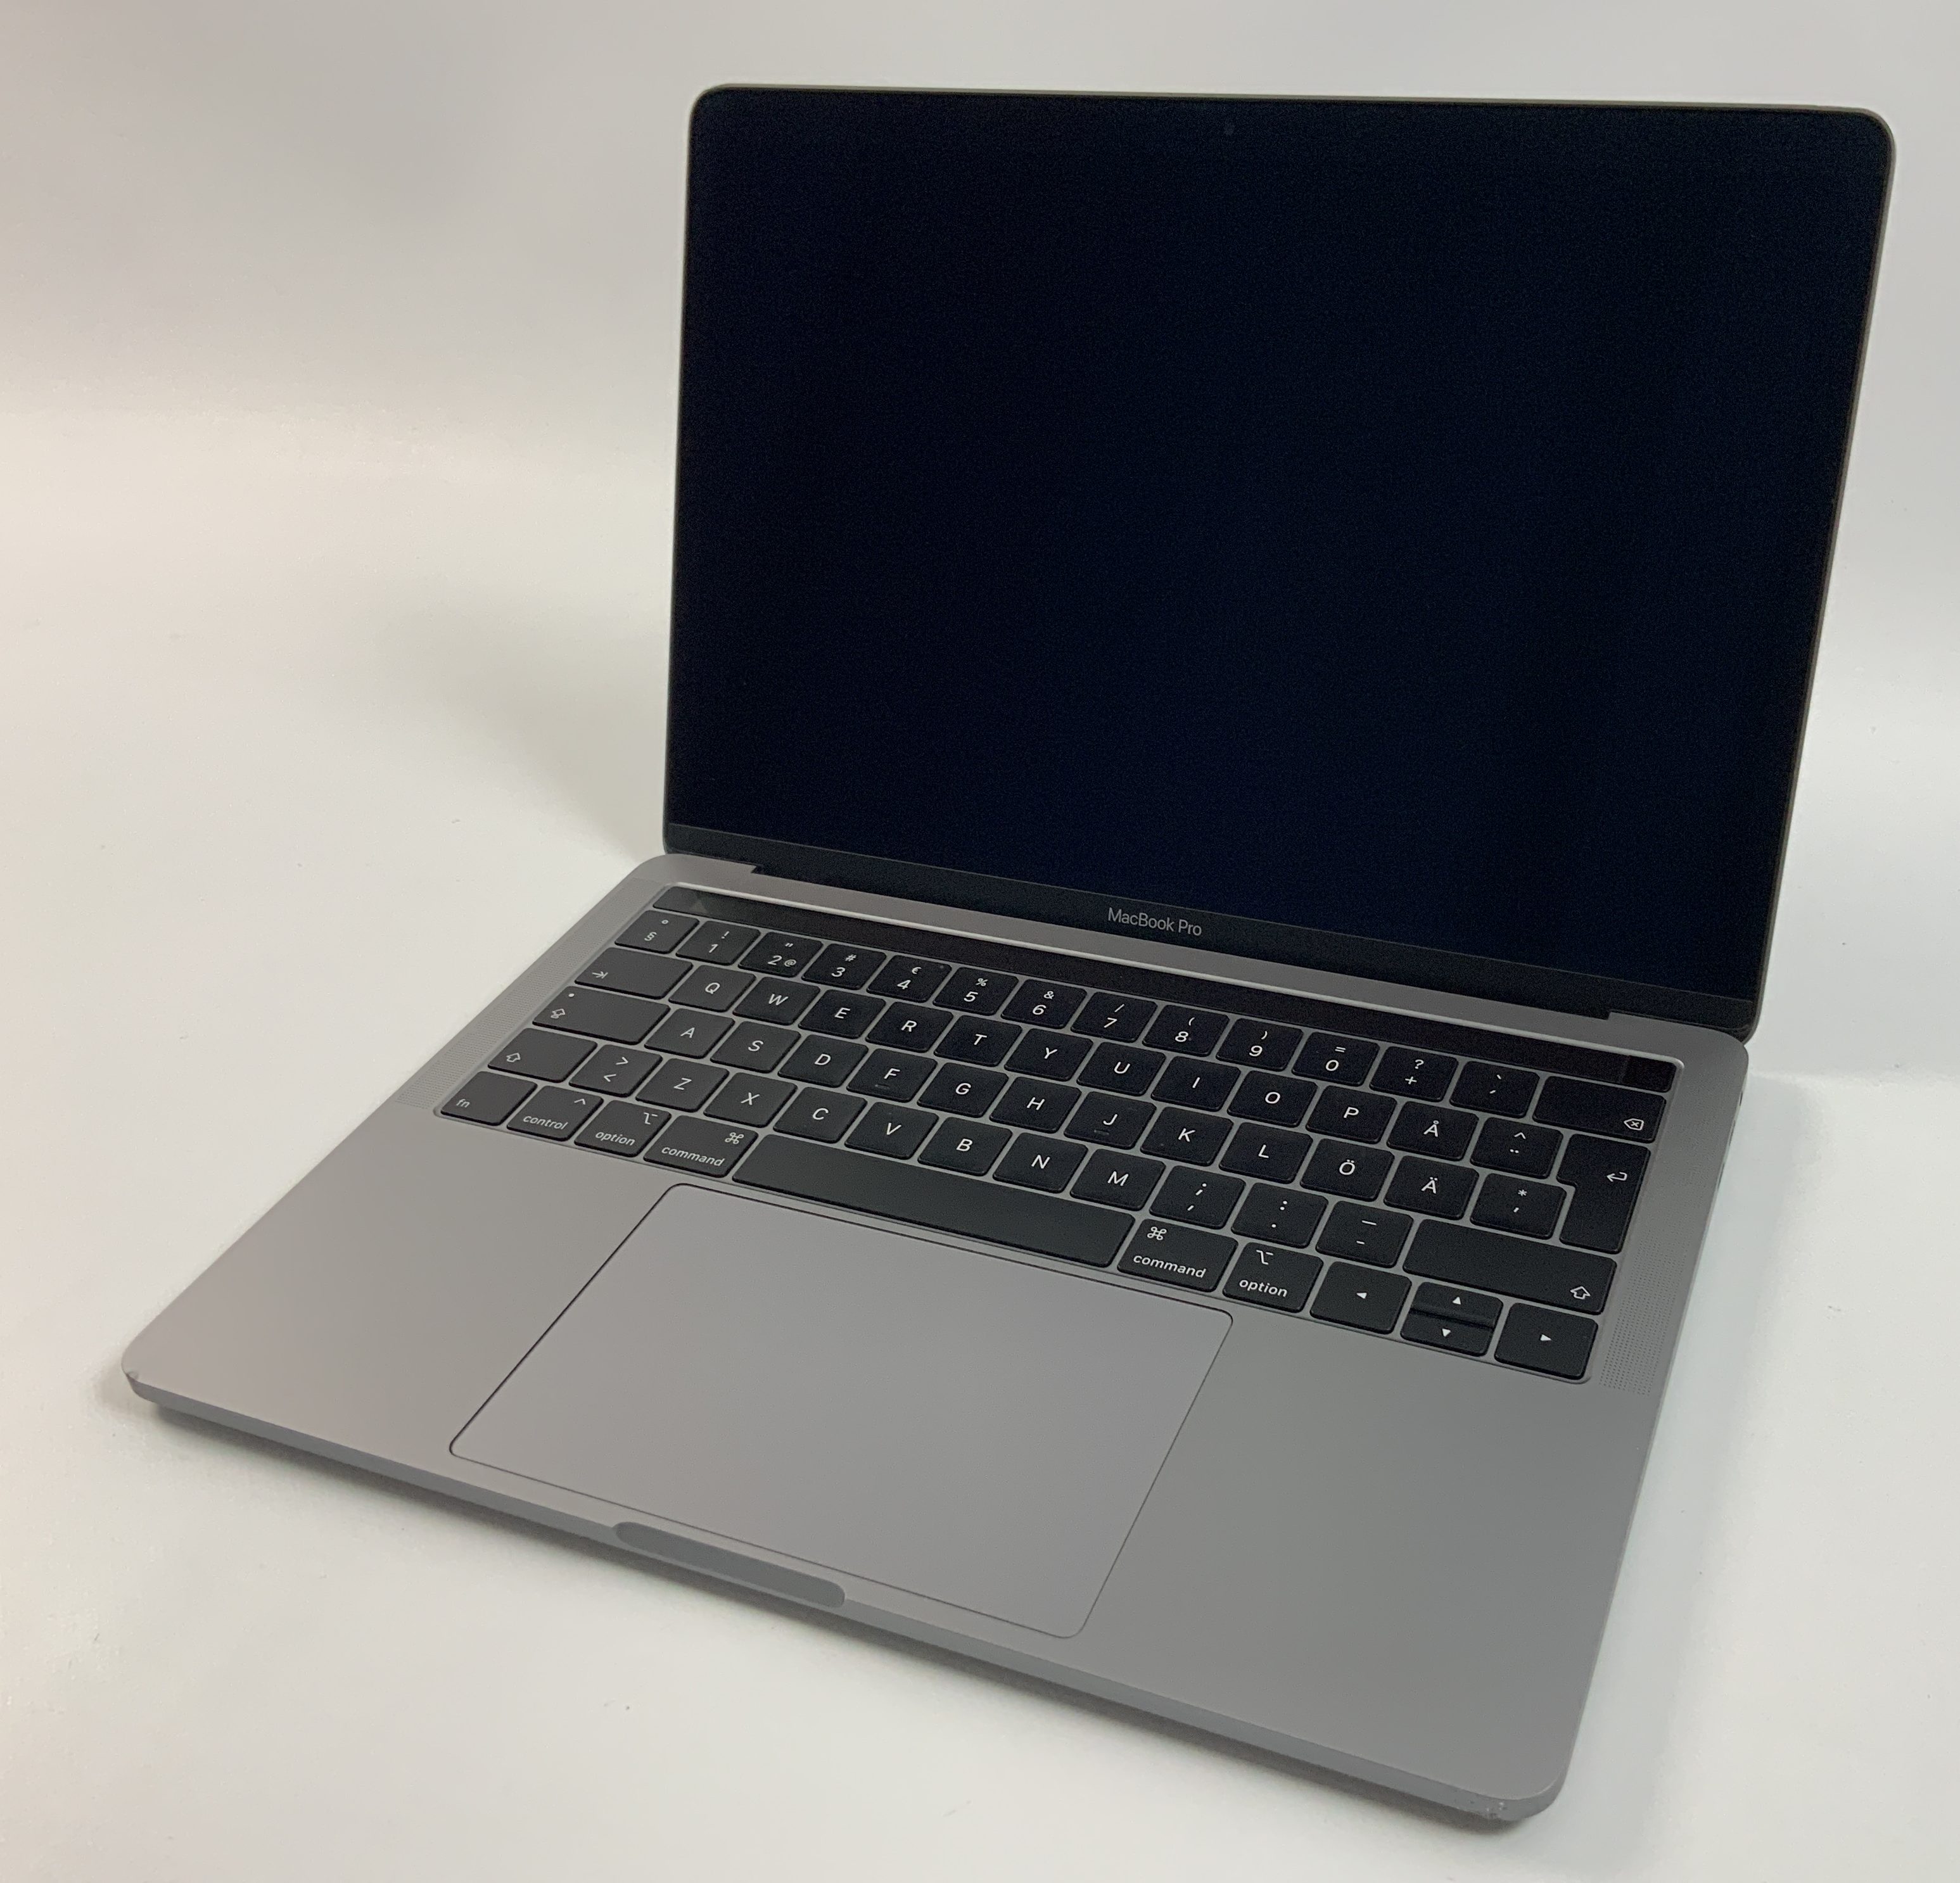 MacBook Pro 13" 4TBT Mid 2019 (Intel Quad-Core i5 2.4 GHz 8 GB RAM 256 GB SSD), Space Gray, Intel Quad-Core i5 2.4 GHz, 8 GB RAM, 256 GB SSD, Kuva 1